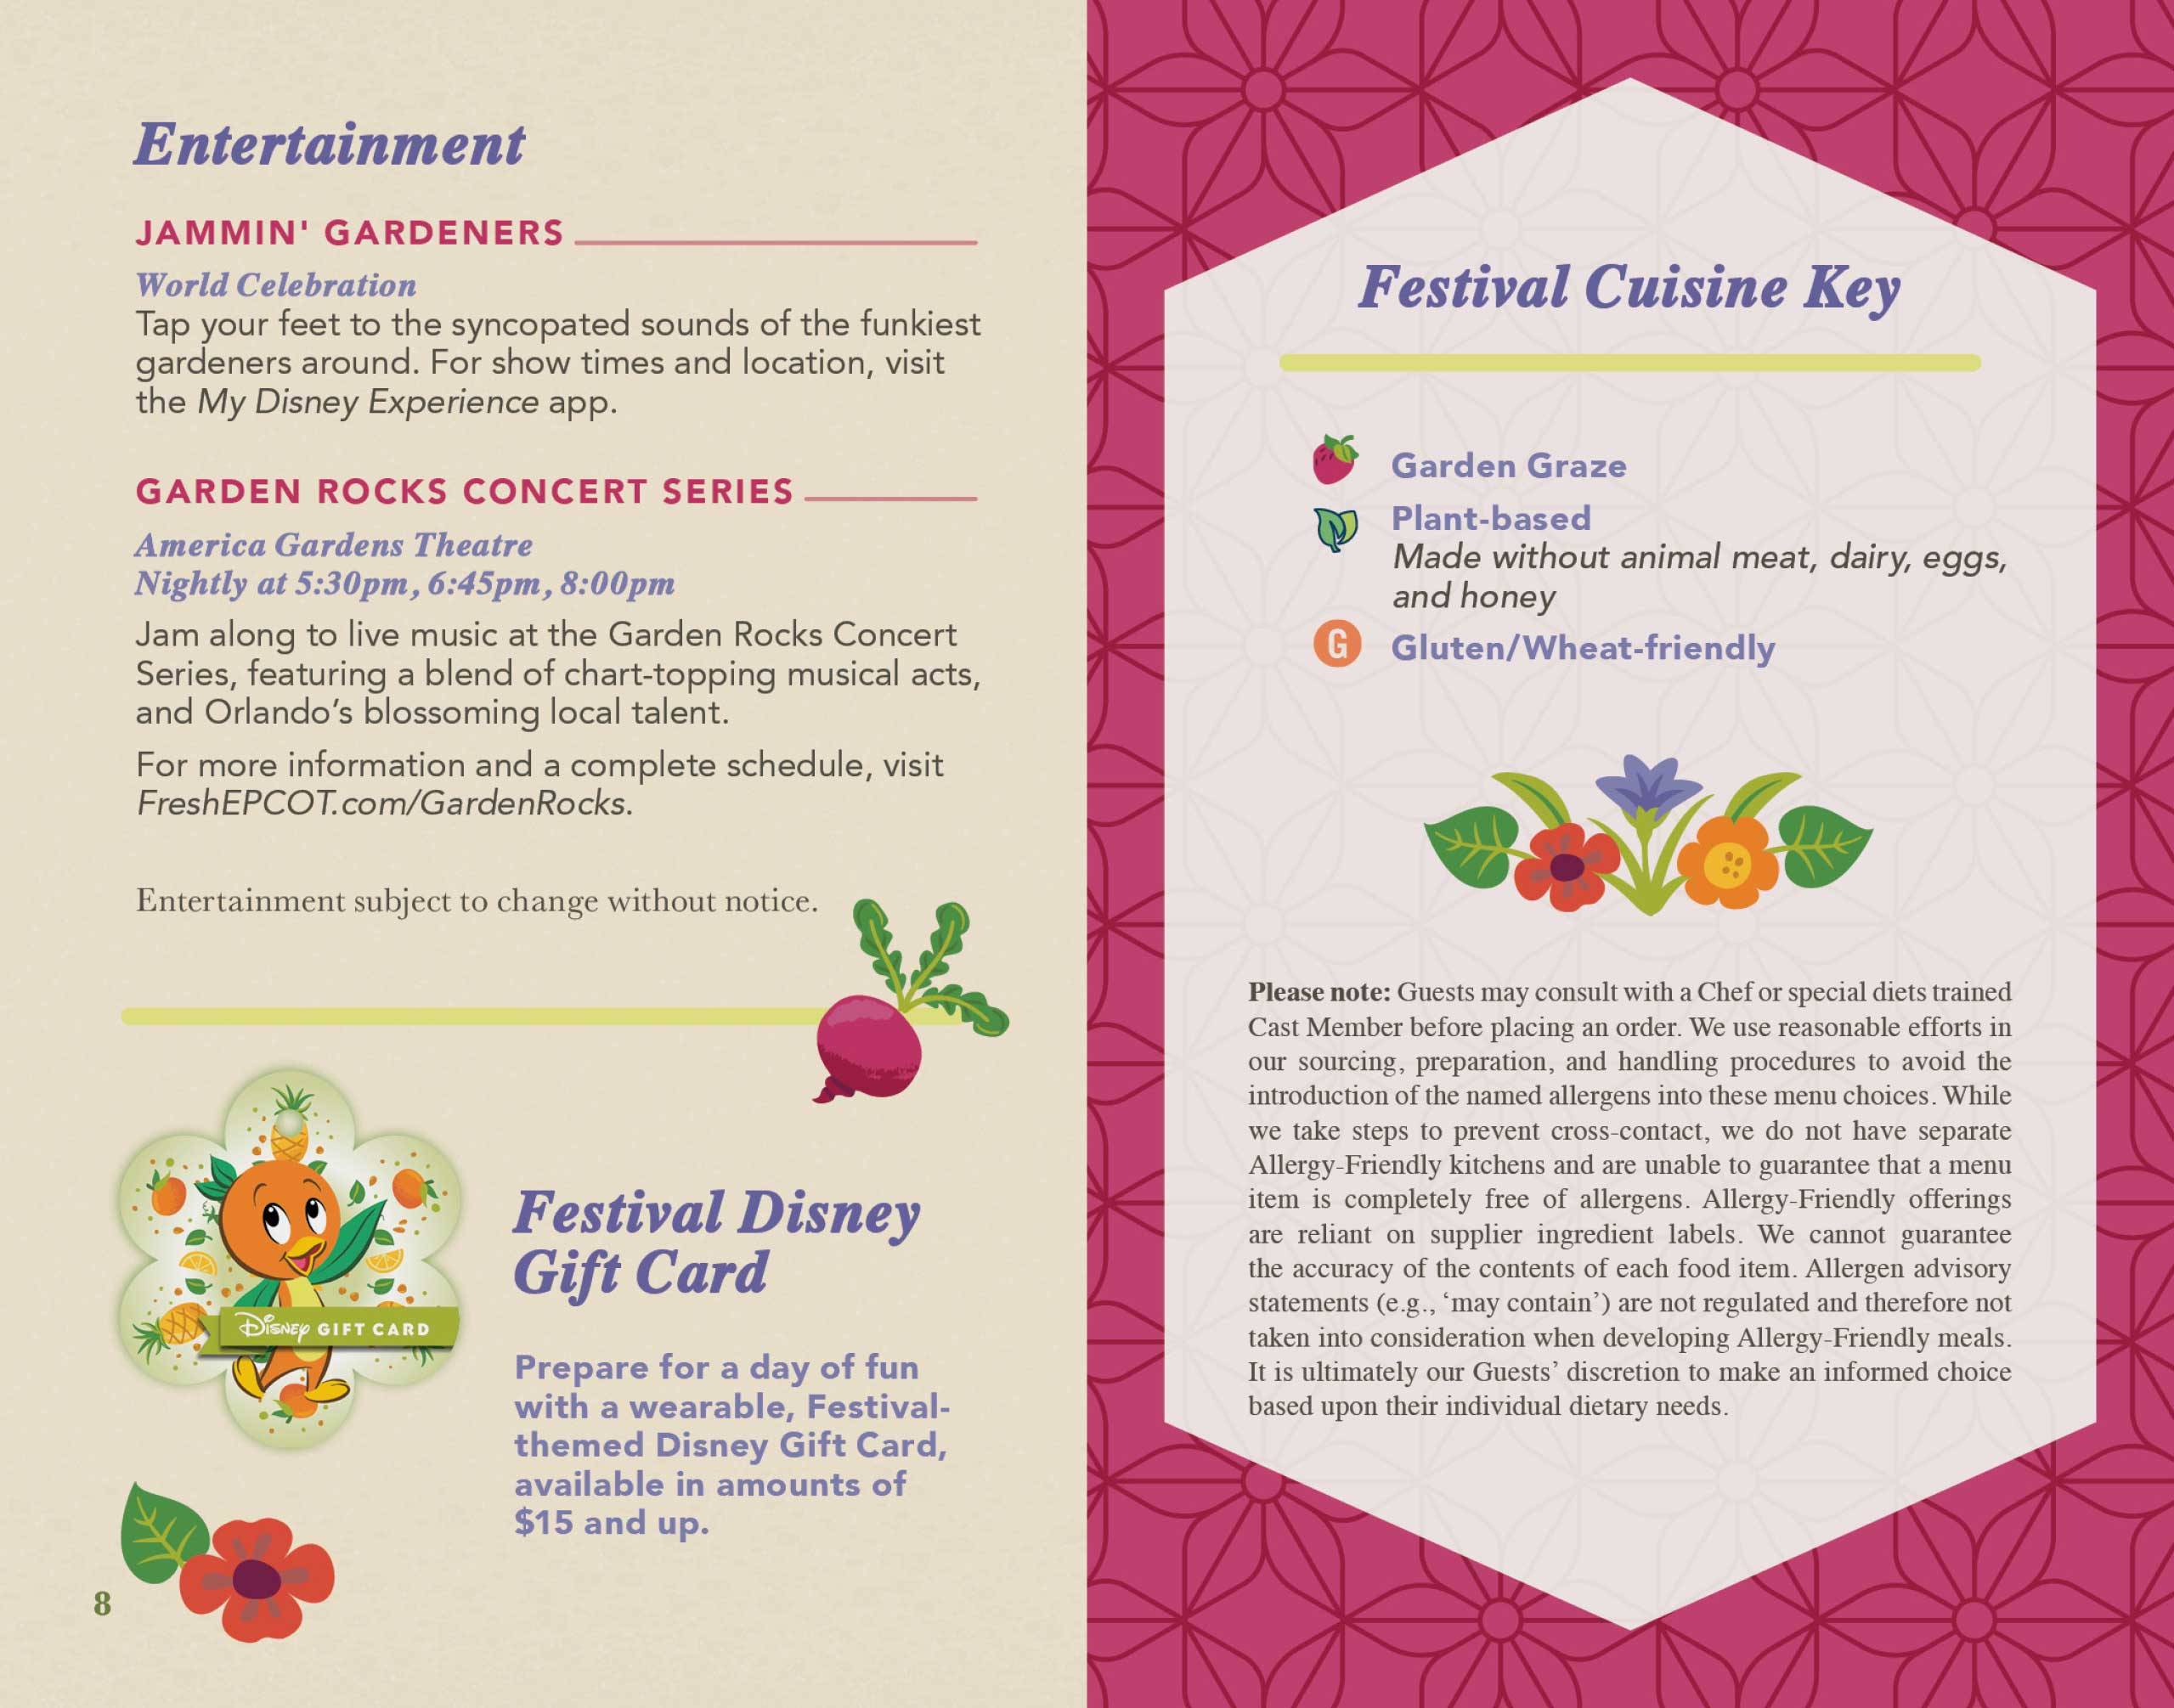 2022 EPCOT International Flower and Garden Festival Passport